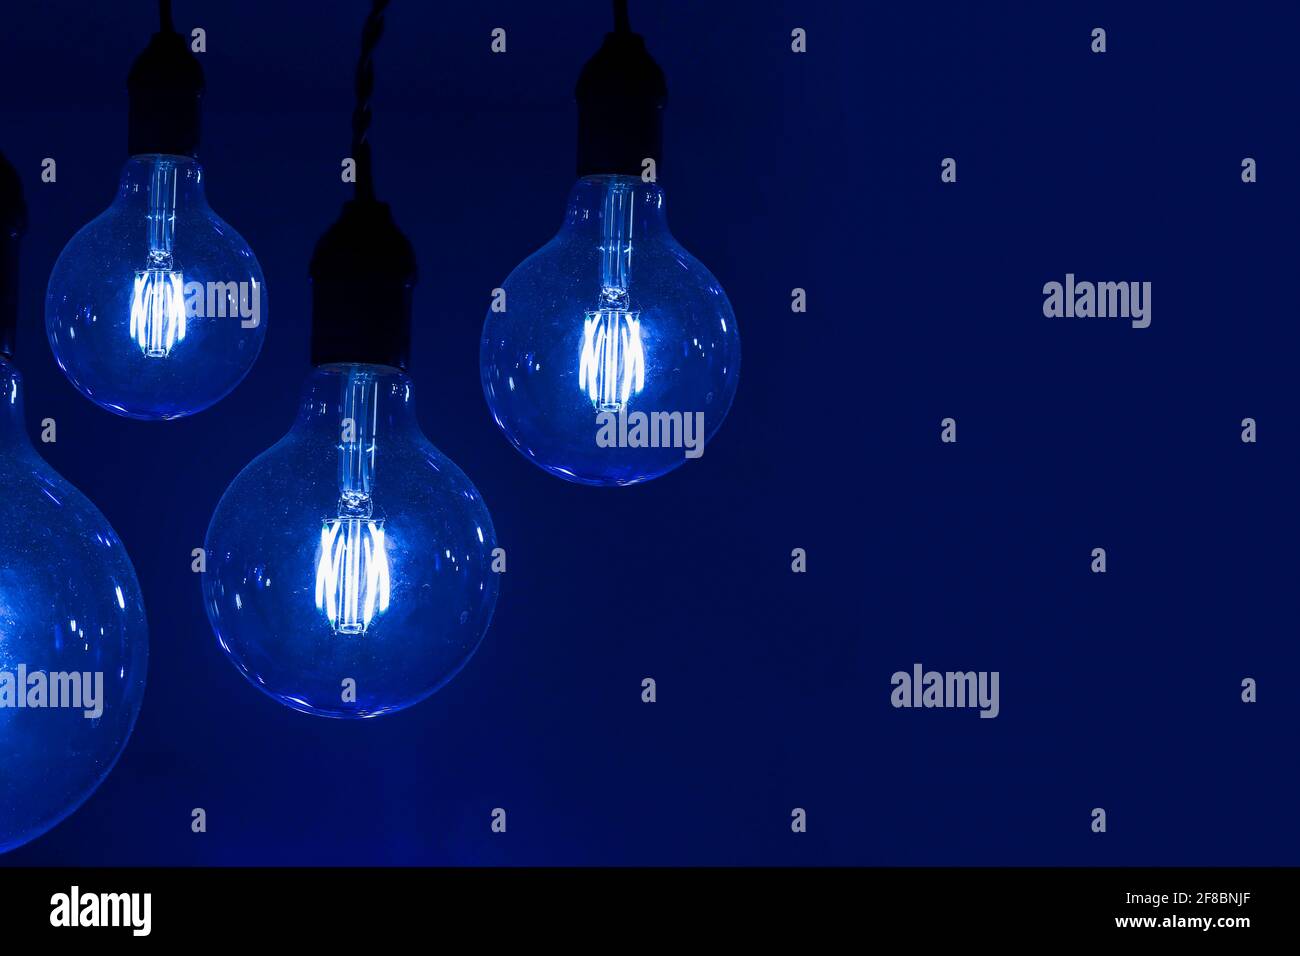 diverses vieilles lampes électriques vintage sur fond sombre - idées concept Banque D'Images